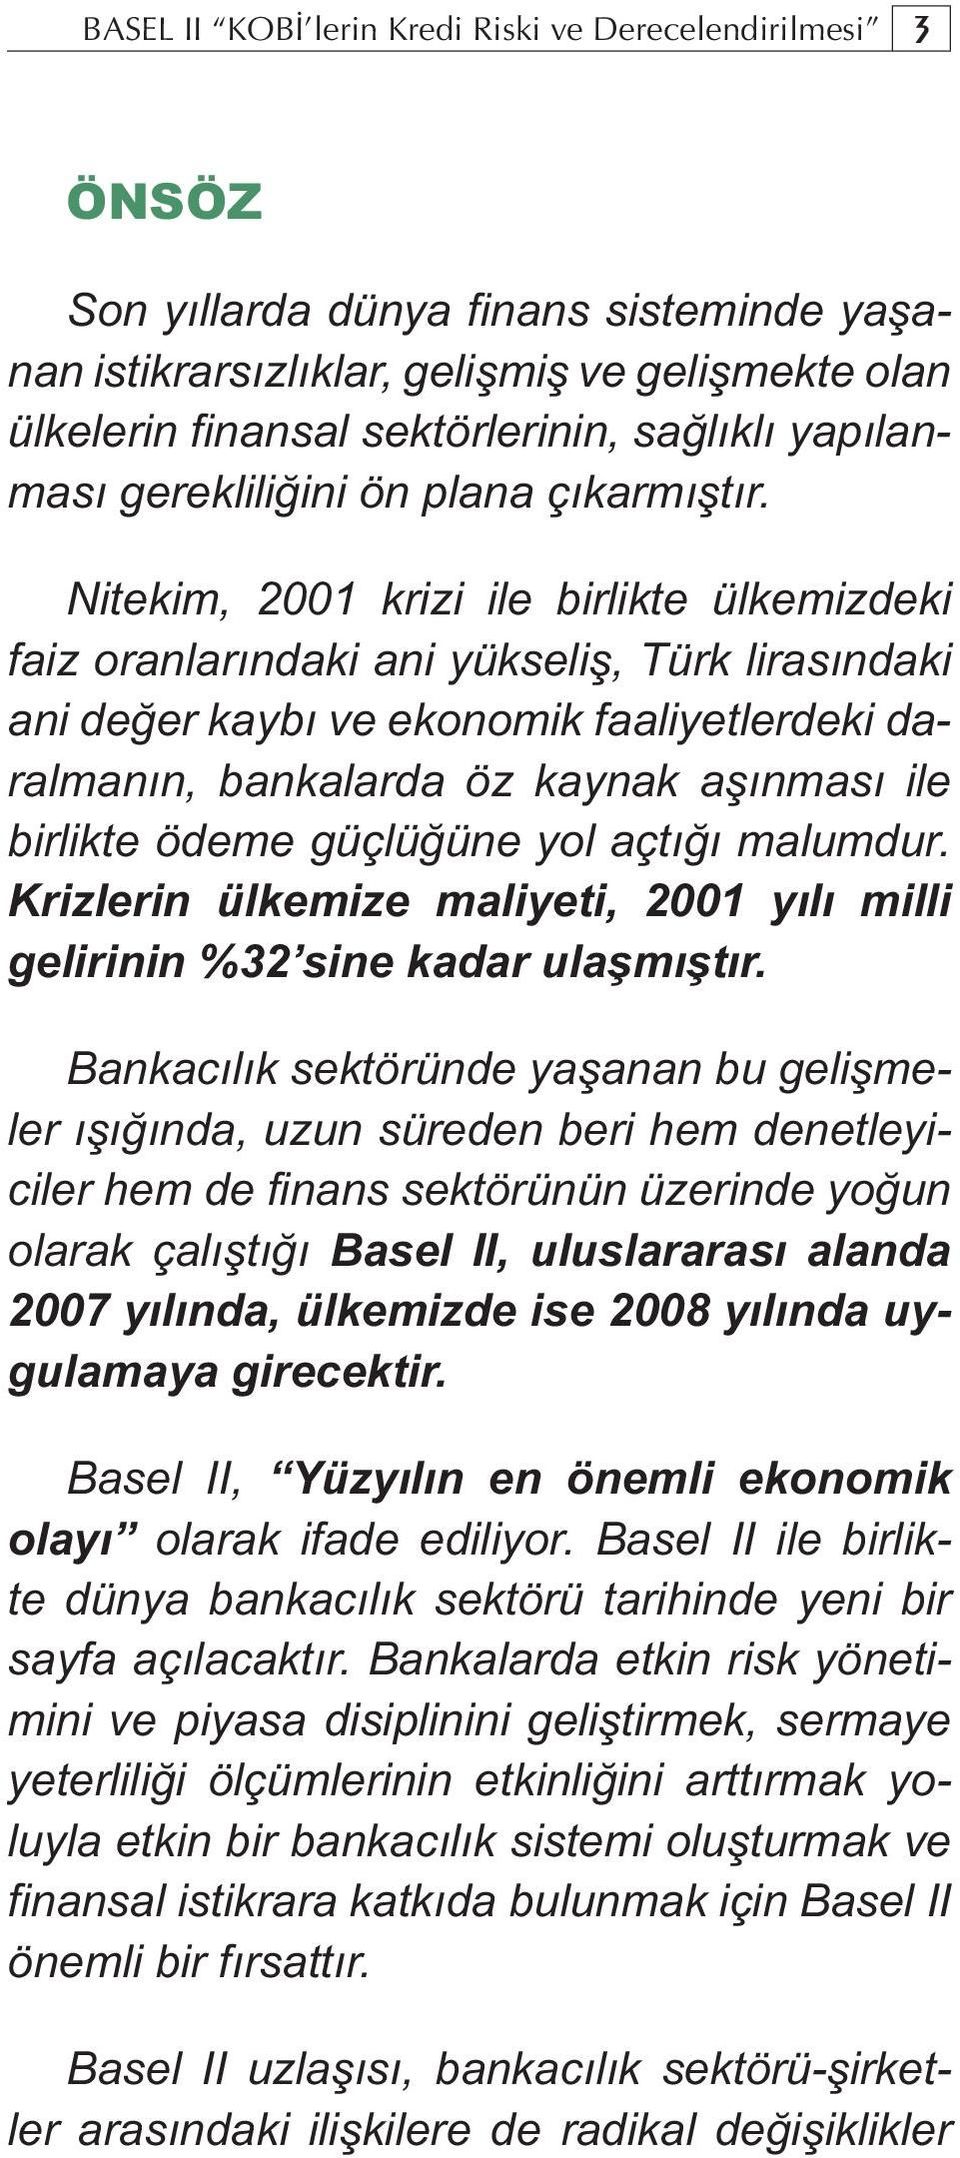 Nitekim, 2001 krizi ile birlikte ülkemizdeki faiz oranlarındaki ani yükseliş, Türk lirasındaki ani değer kaybı ve ekonomik faaliyetlerdeki daralmanın, bankalarda öz kaynak aşınması ile birlikte ödeme